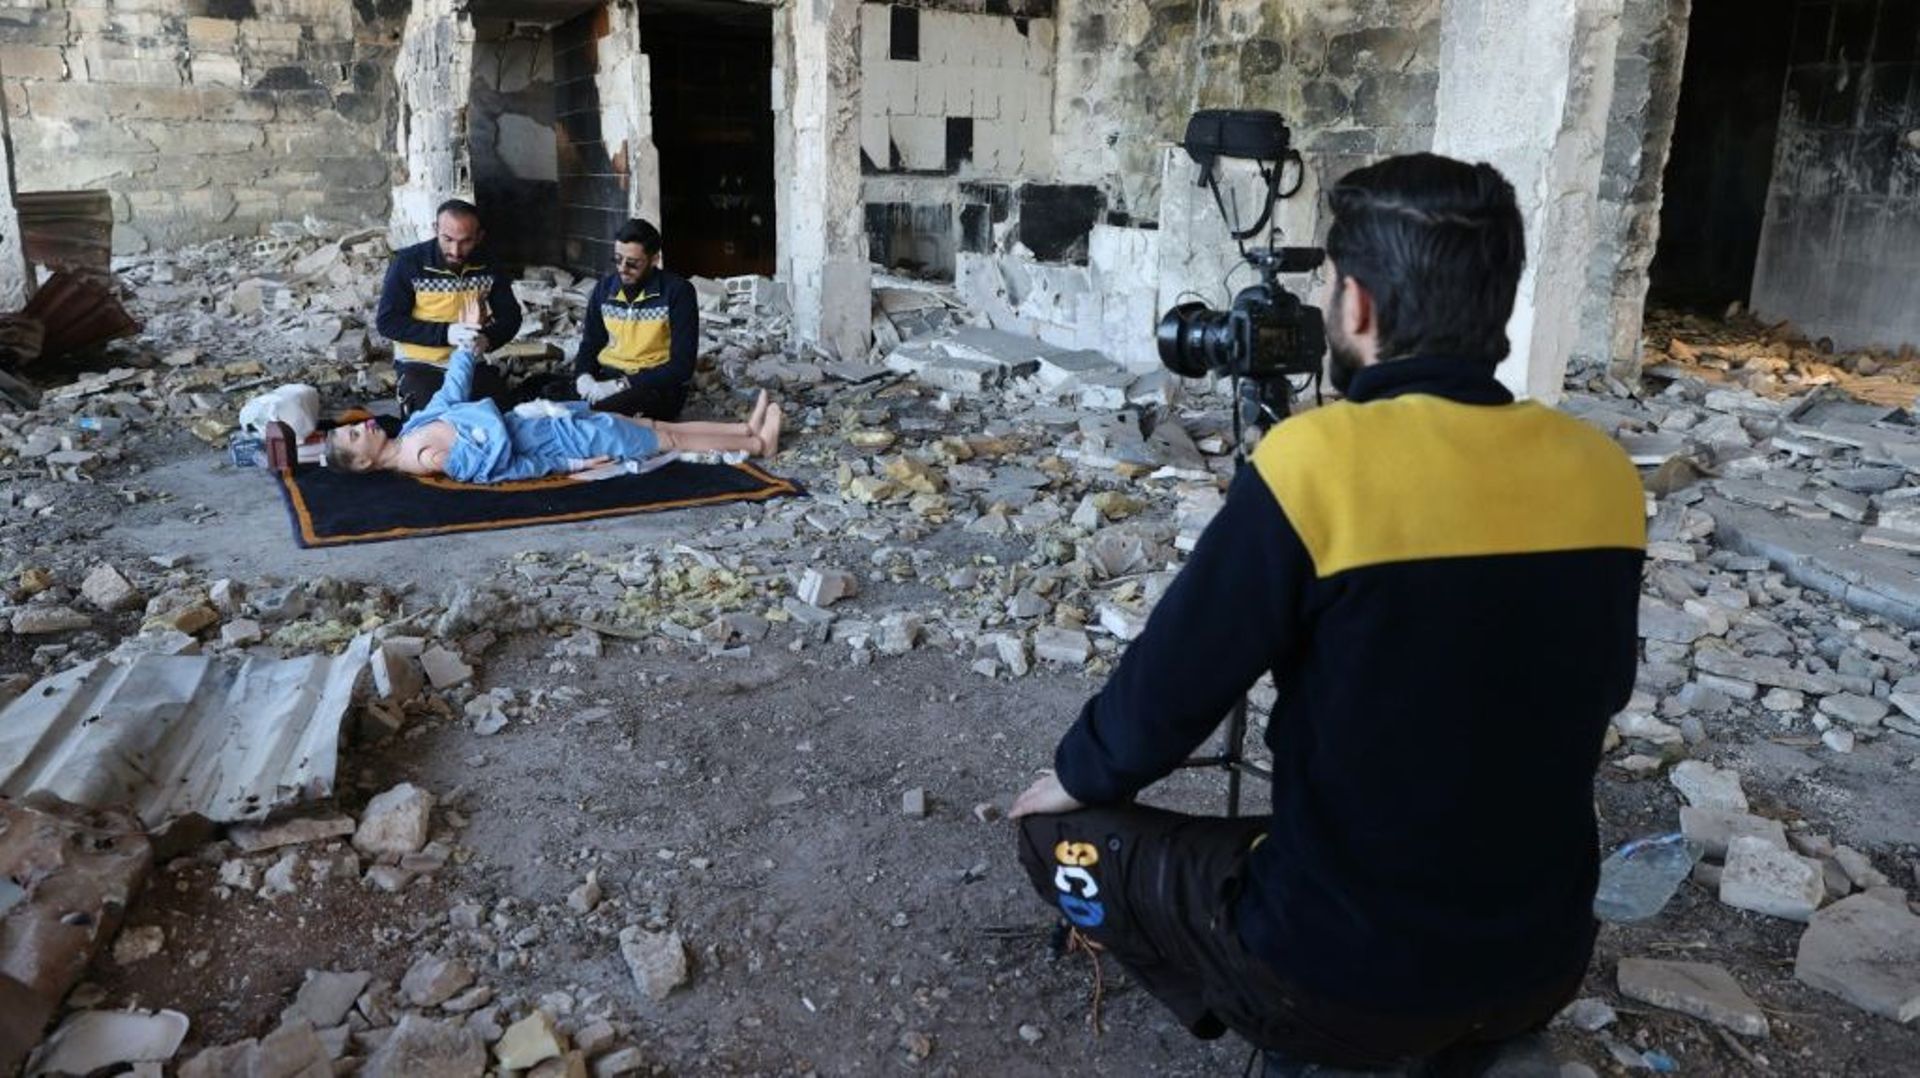 Face à une caméra, des secouristes des Casques blancs à Ariha en Syrie utilisent un mannequin allongé au sol pour montrer comment traiter un blessé dans la guerre, une vidéo destinée aux secouristes ukrainiens, le 16 mars 2022